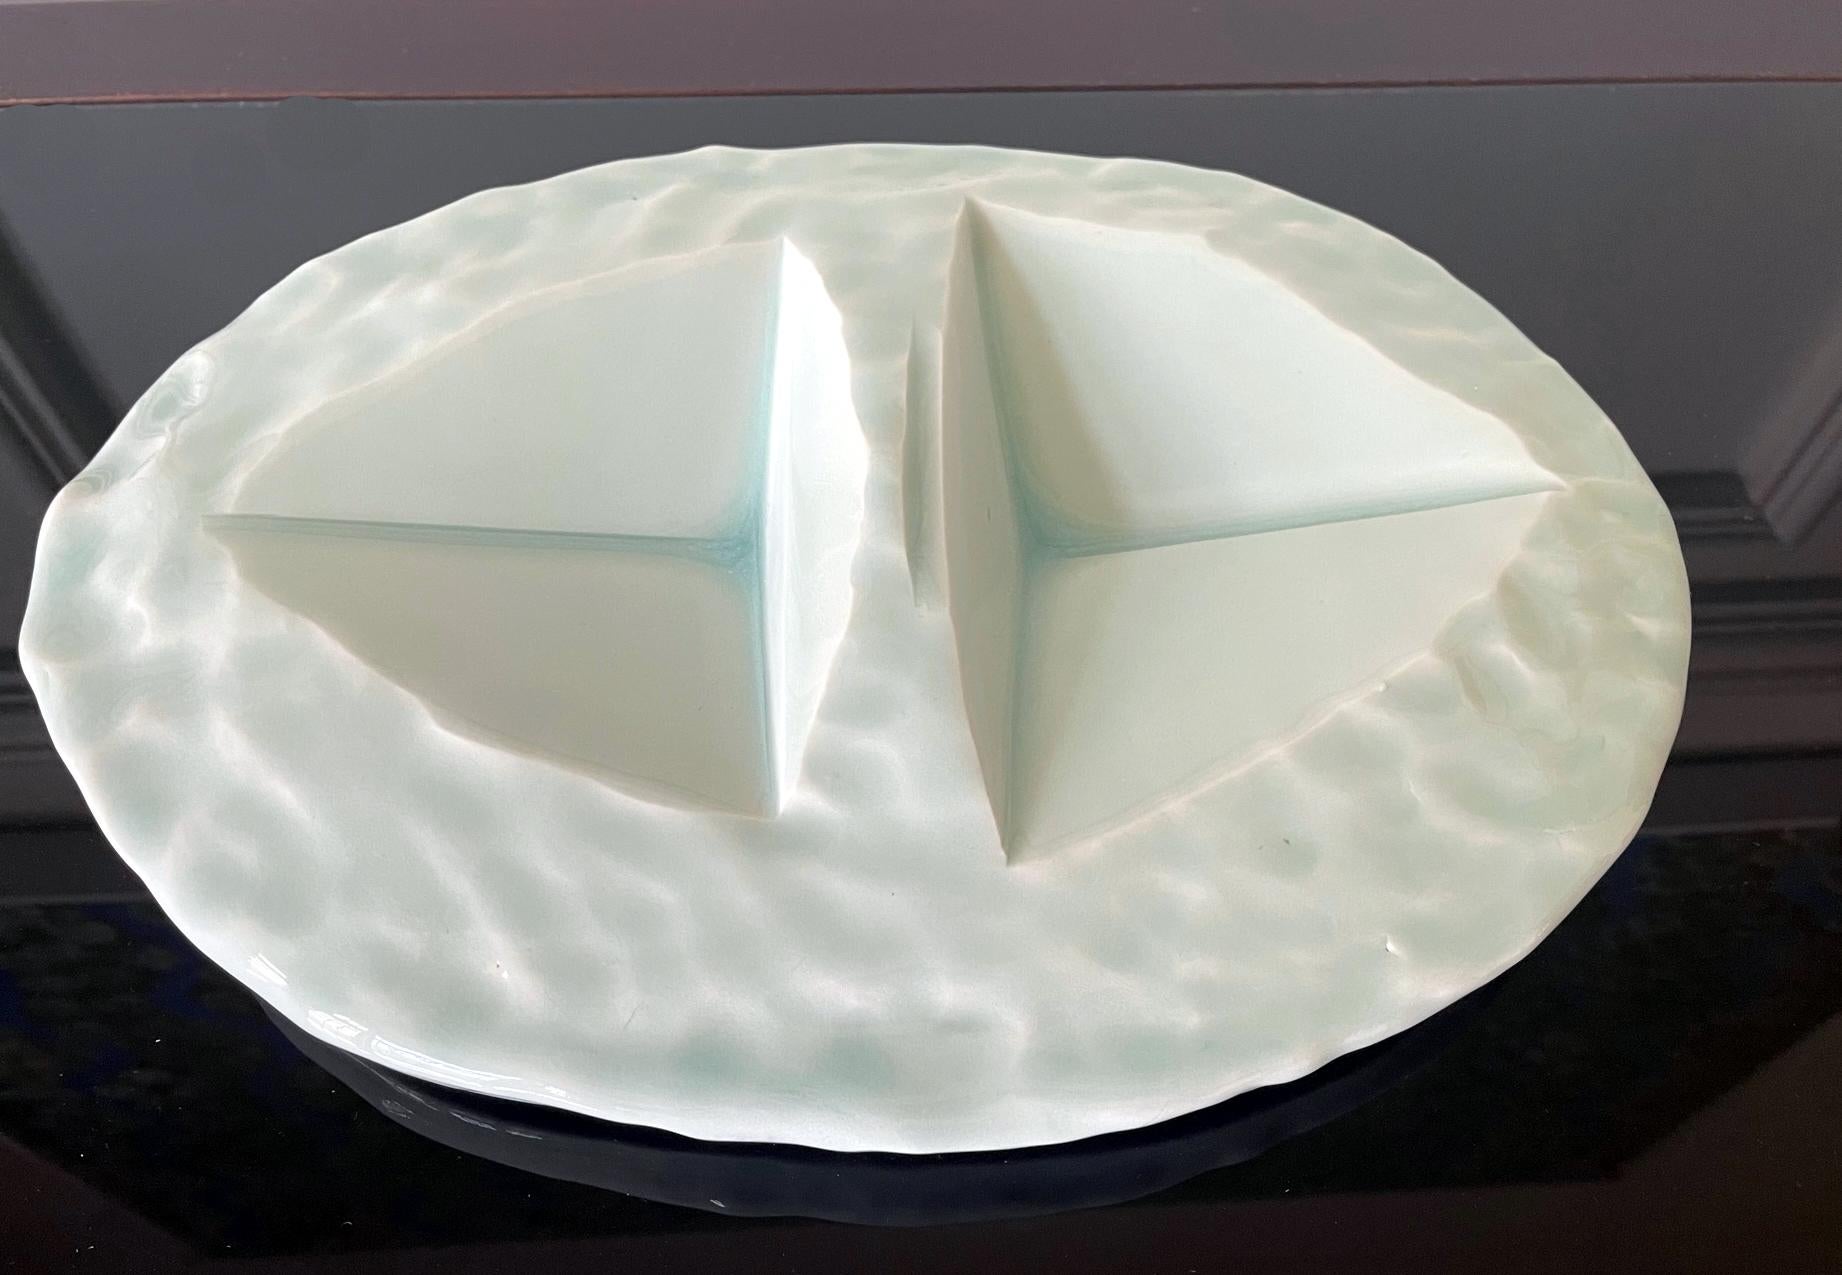 Une plaque sculpturale en céramique richement émaillée en forme d'assiette de centre de table par l'artiste céramiste japonais Yoshikawa Masamichi (1946-). Cette pièce très abstraite a été fabriquée à la main avec des irrégularités intentionnelles